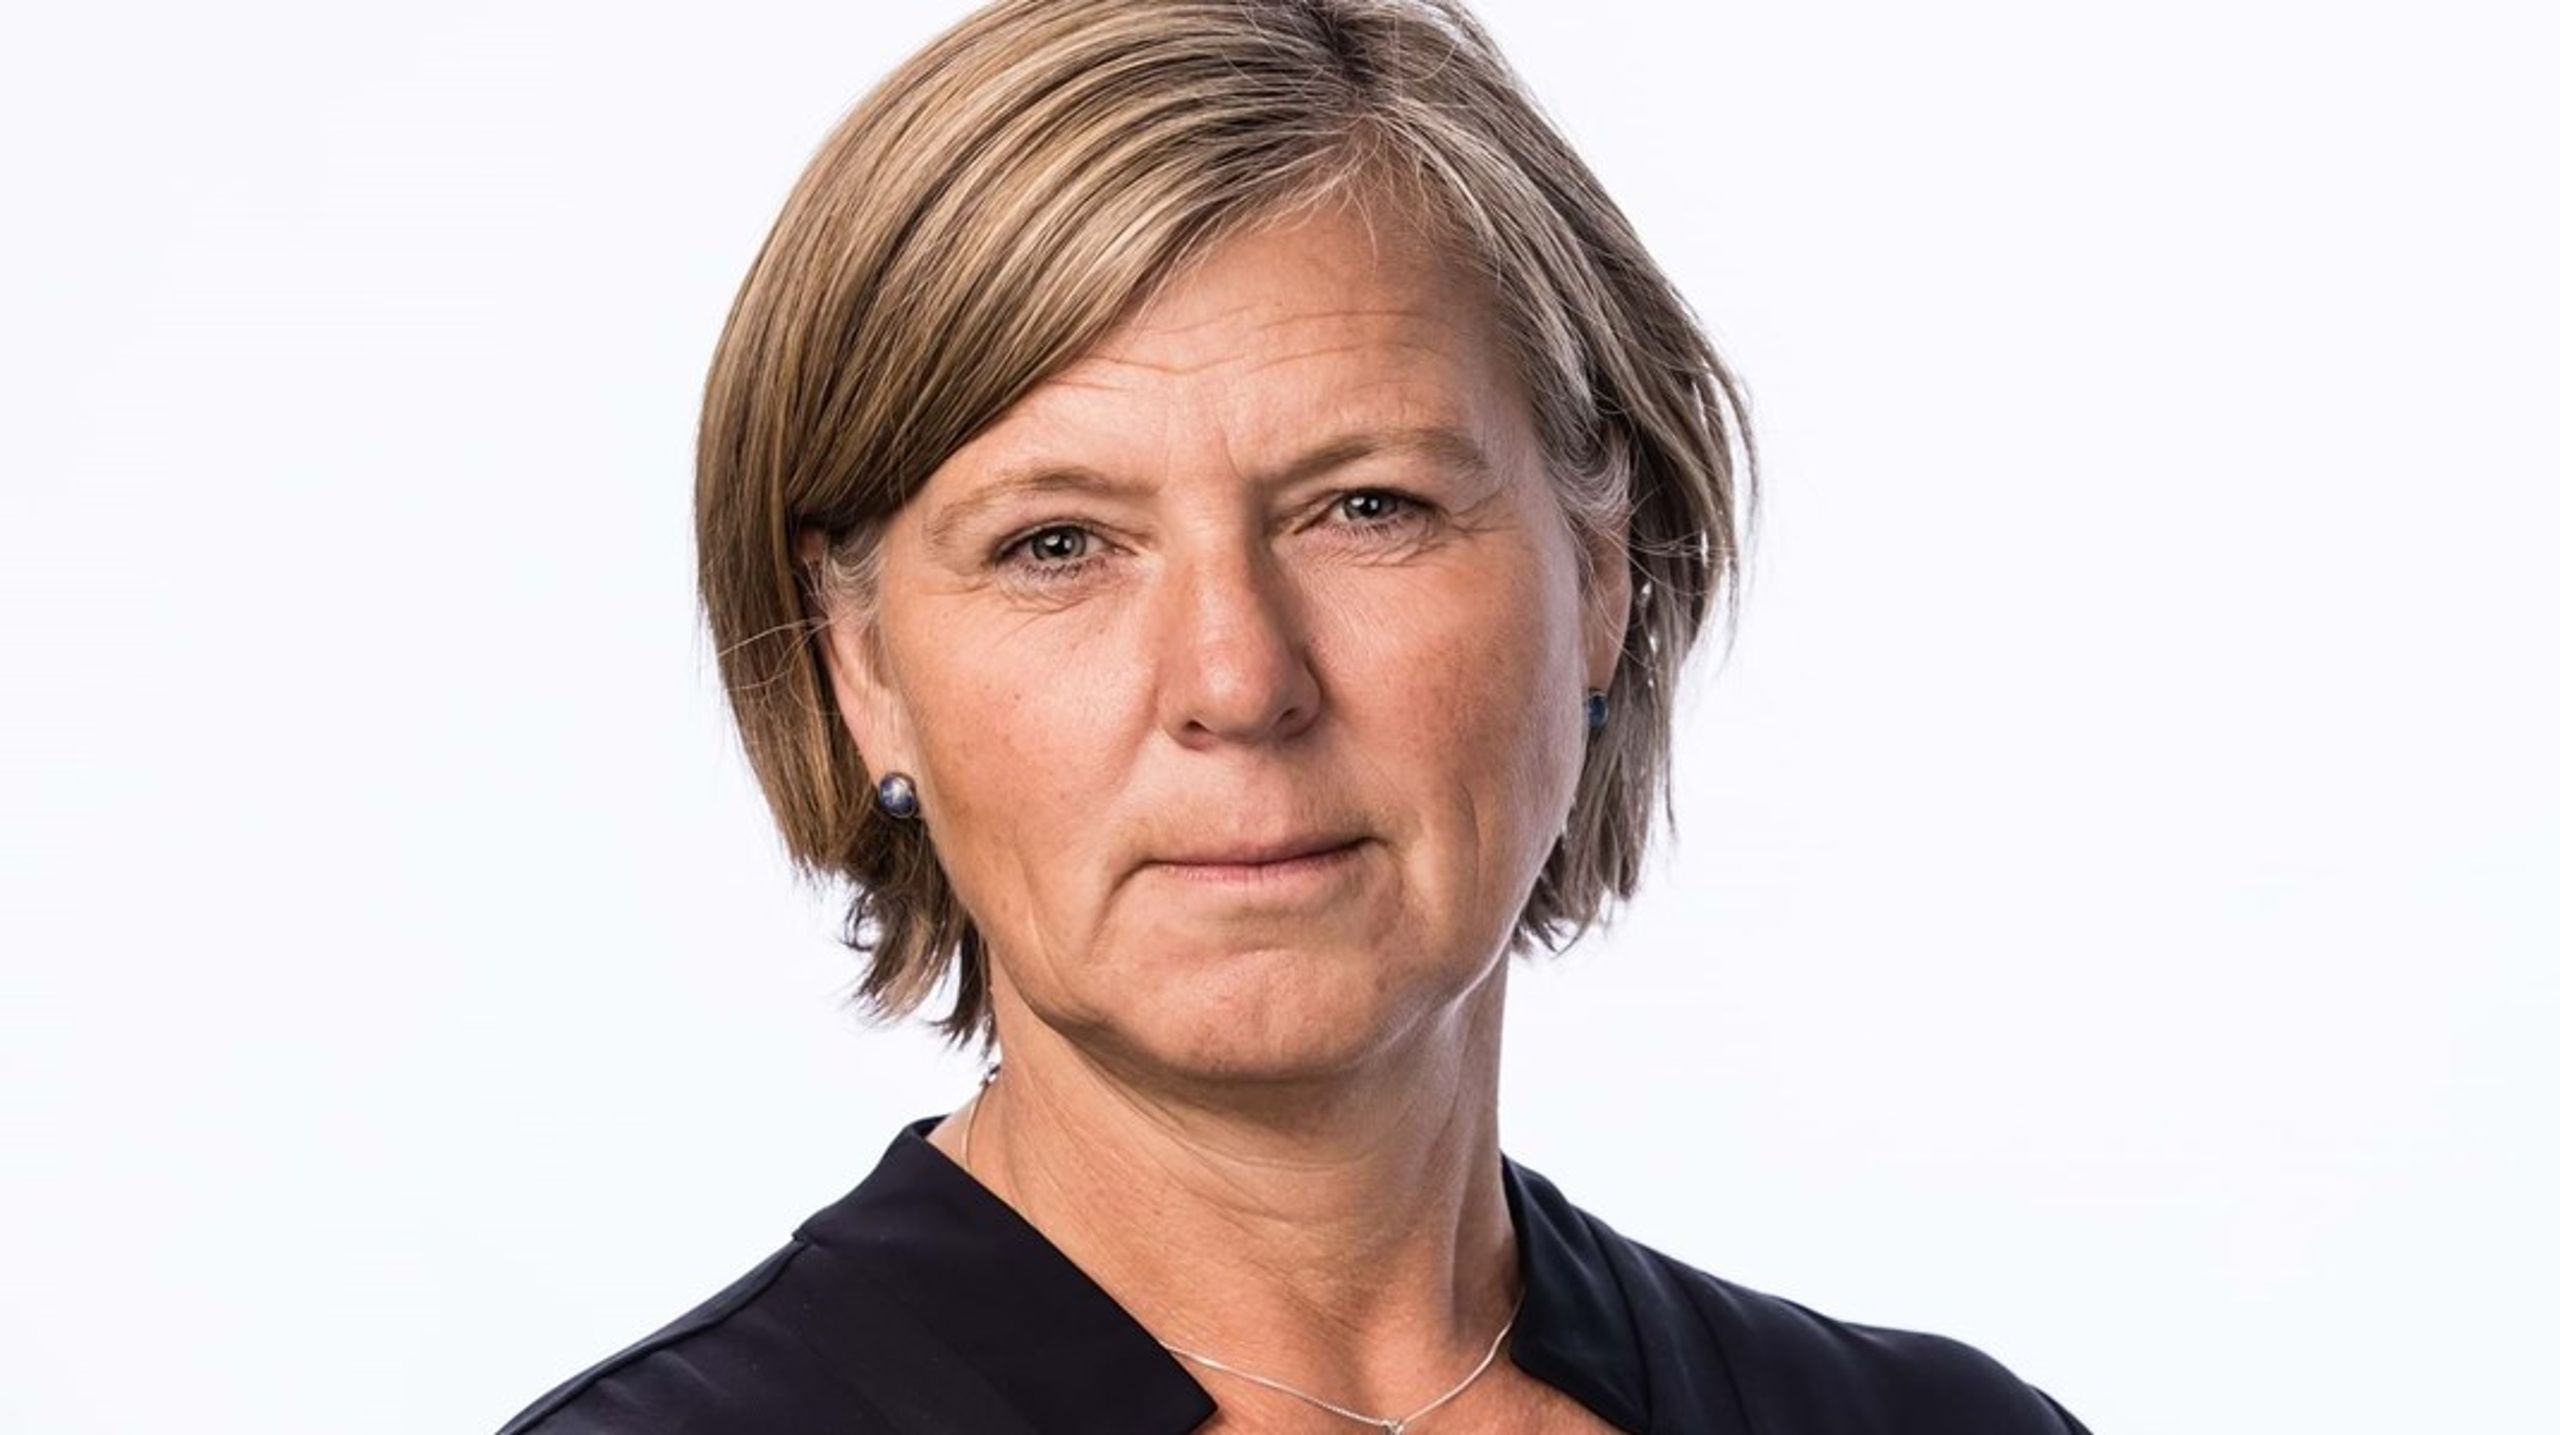 President i Legeforeningen, Anne-Karin Rime, mener det er uforståelig at helsemyndighetene ennå krever dobbel turnustjeneste for leger med dansk medisinutdanning.